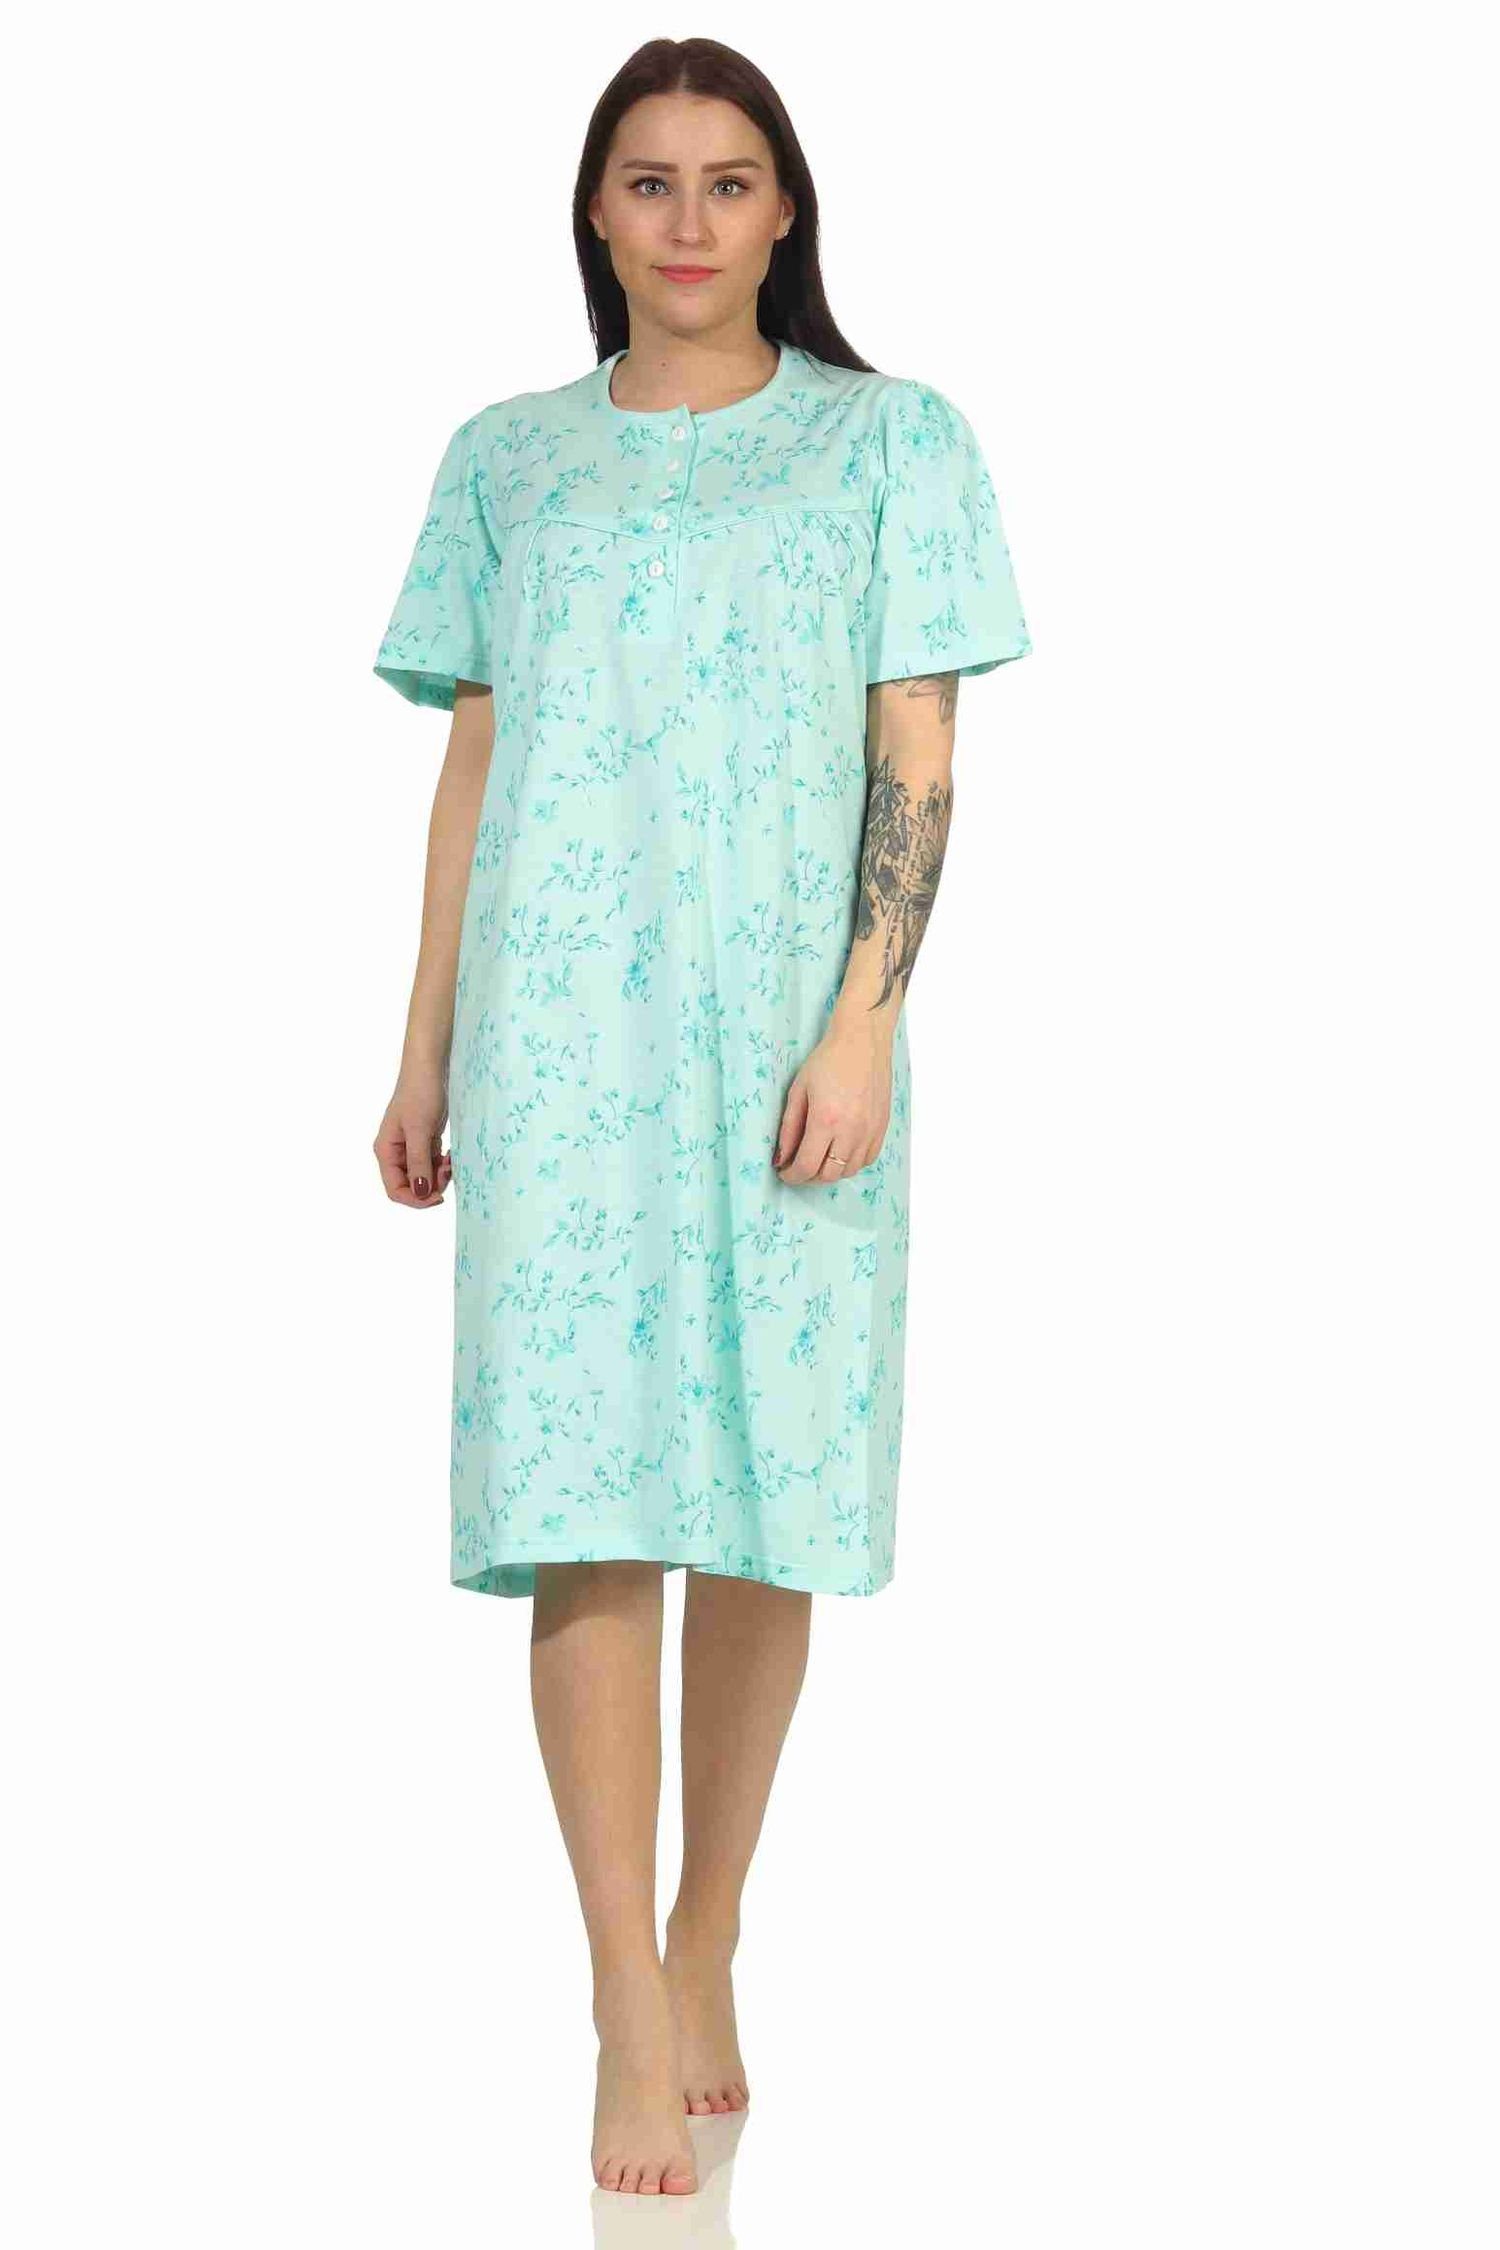 RELAX by Normann Nachthemd Frauliches Damen Nachthemd mit Knopfleiste in cm Länge grün